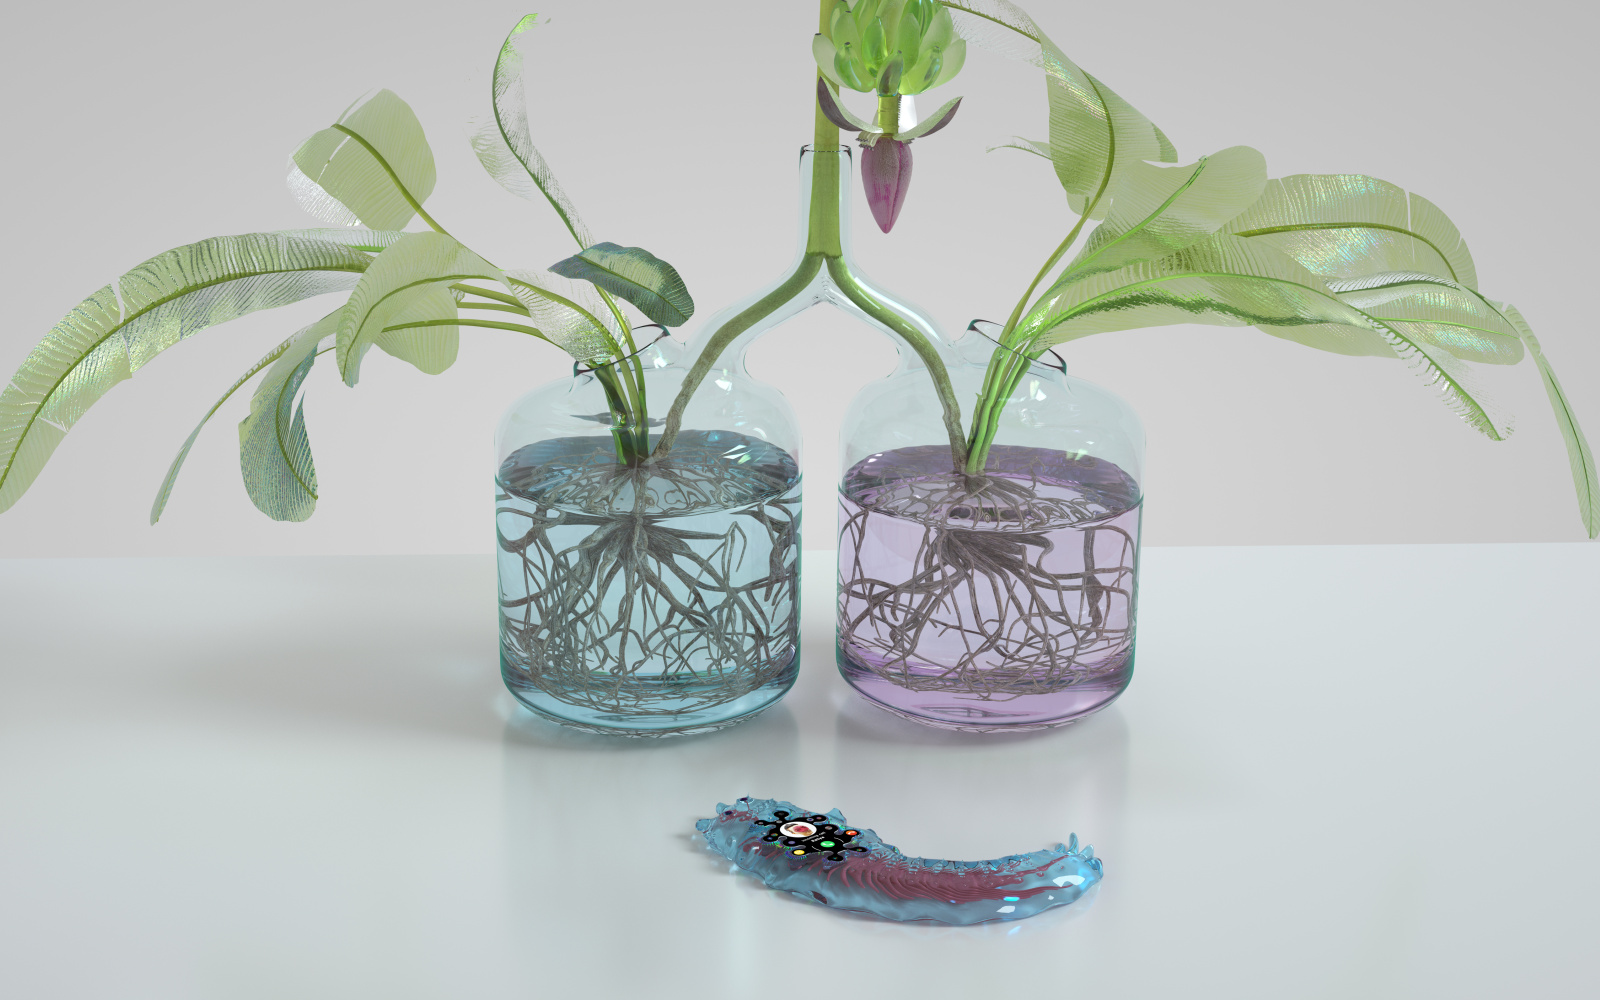 Das Filmstill zeigt zwei Vasen mit blauer und lila Flüssigkeit, aus der Pflanzen herausschauen. Vor den Vasen liegt ein bläuliches, verformtes Objekt, das an eine Fernbedienung erinnert. 